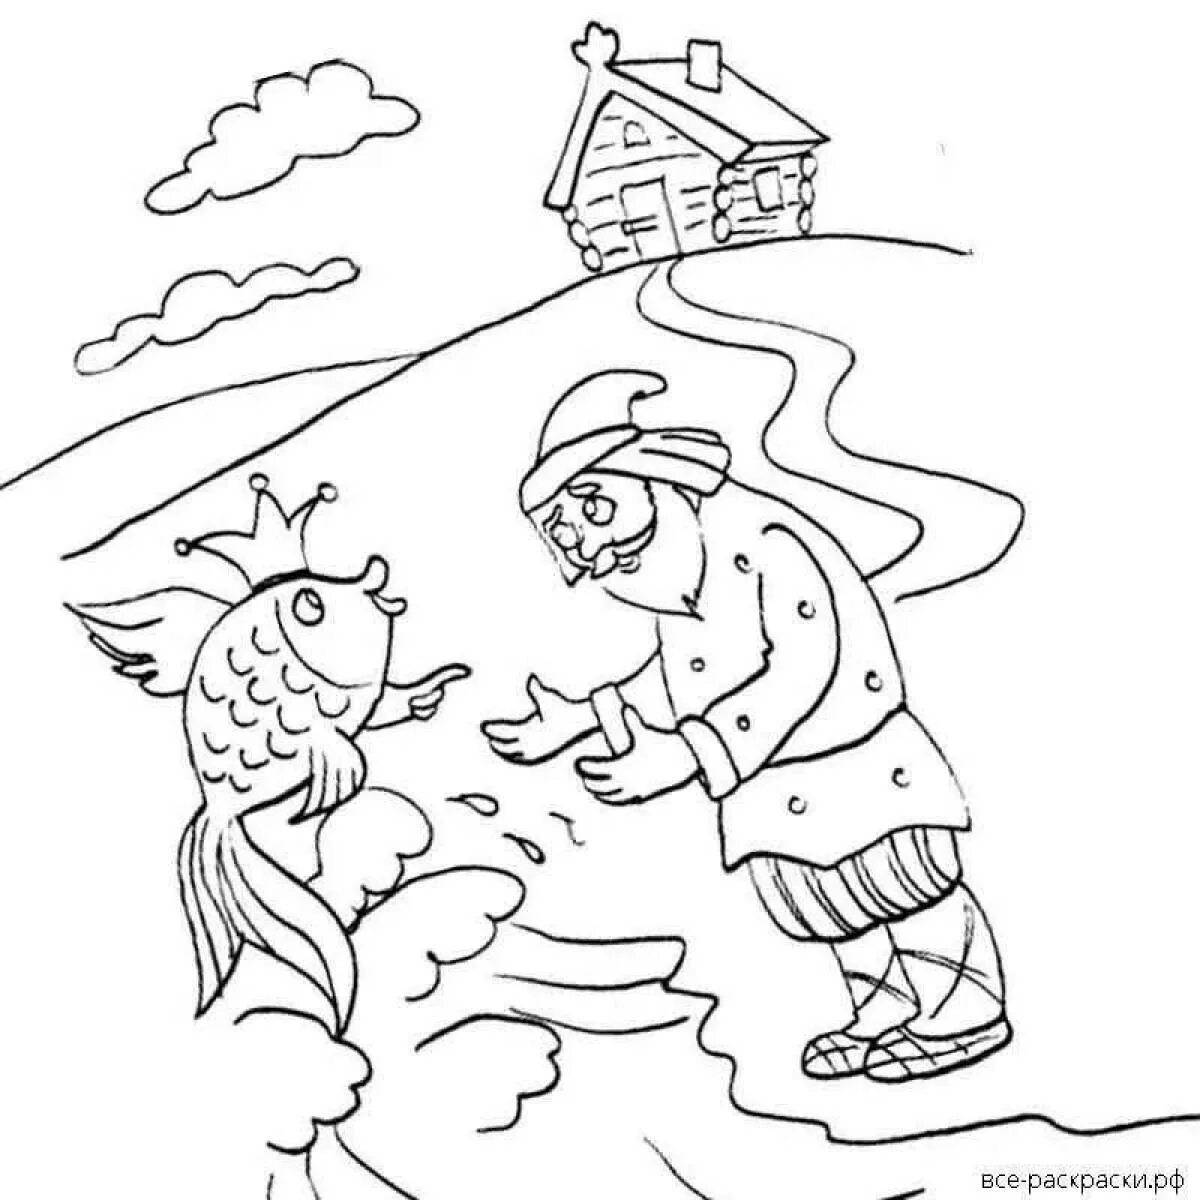 Иллюстрация к сказке о рыбаке и рыбке #27